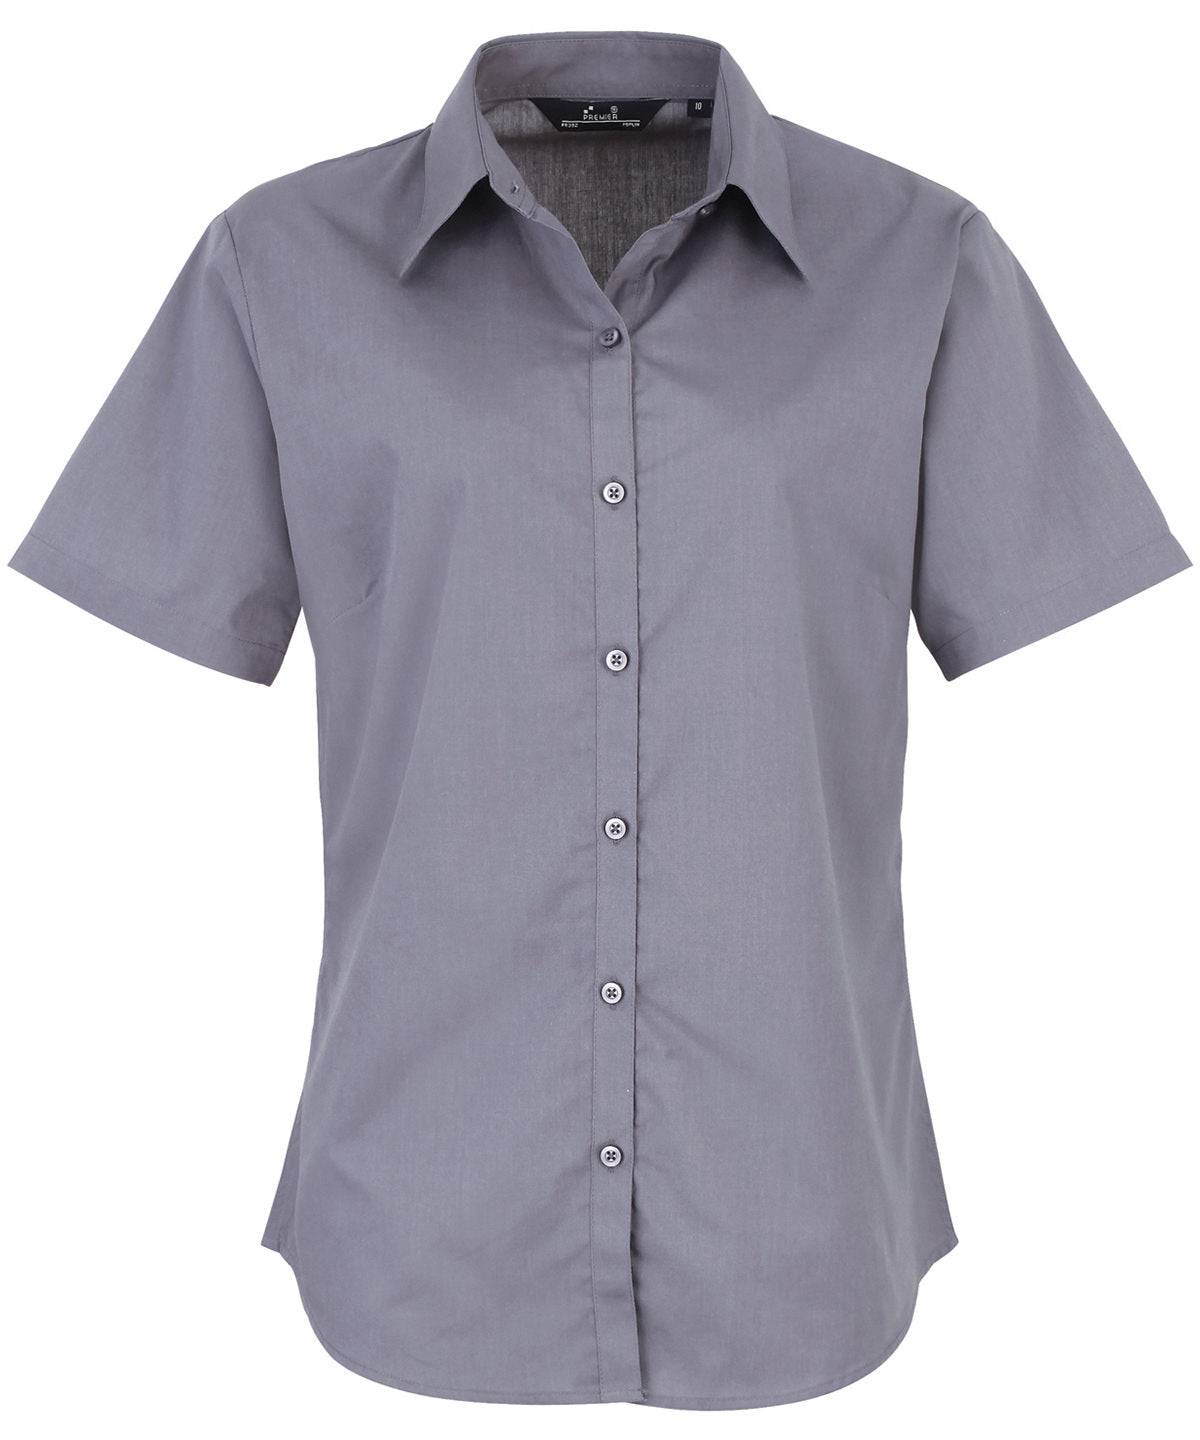 Steel* - Women's short sleeve poplin blouse